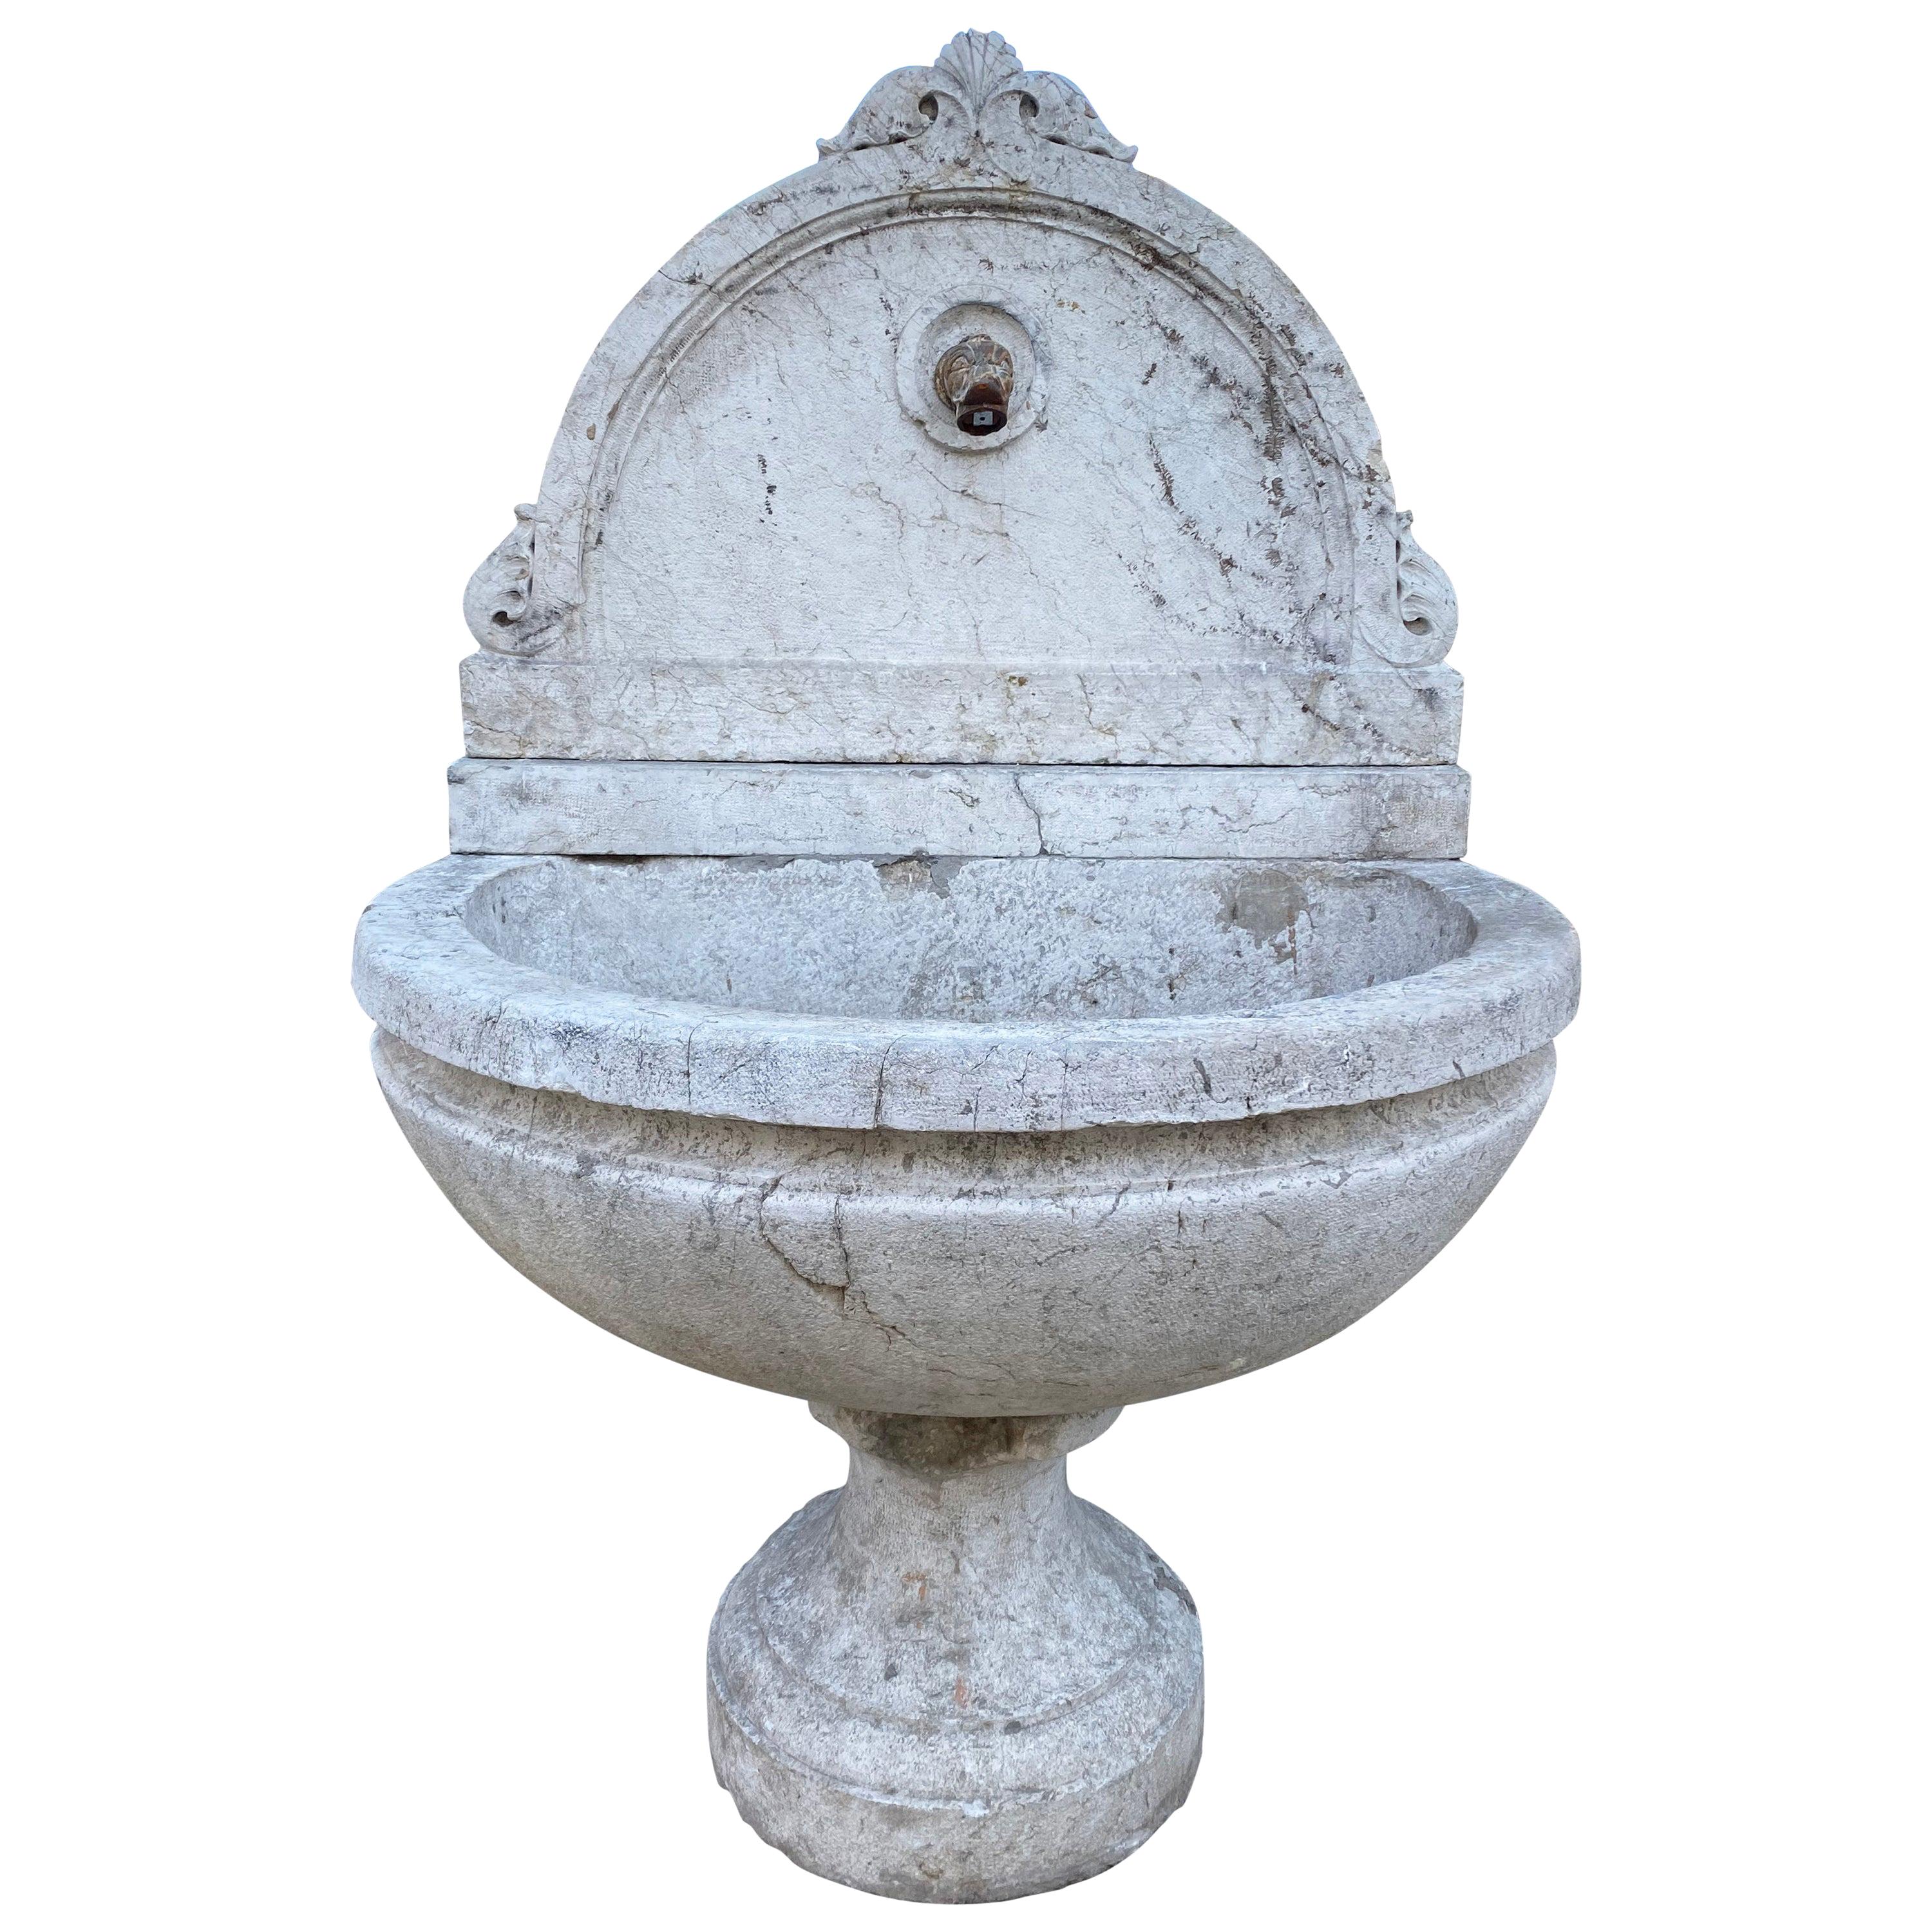 Antique Italian Fountain, circa 1800